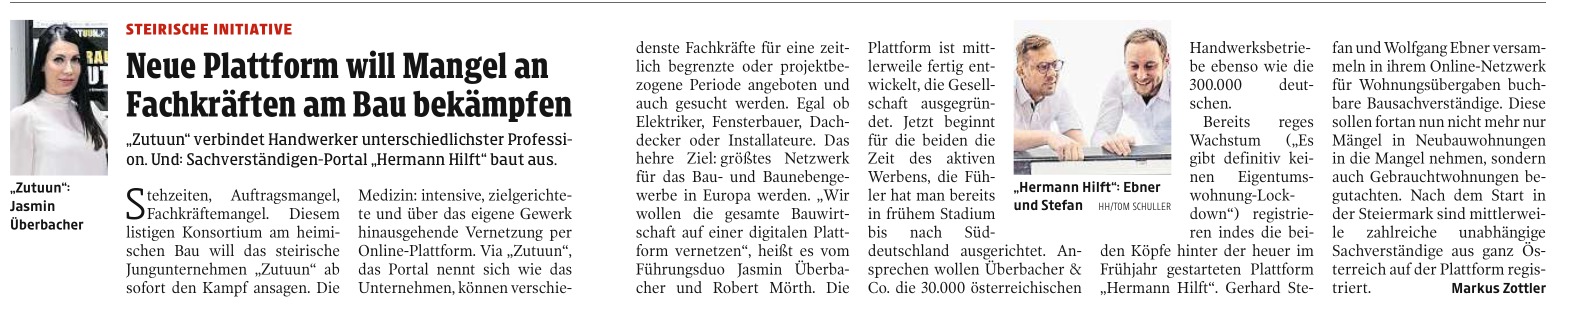 Kleine Zeitung | November 2020